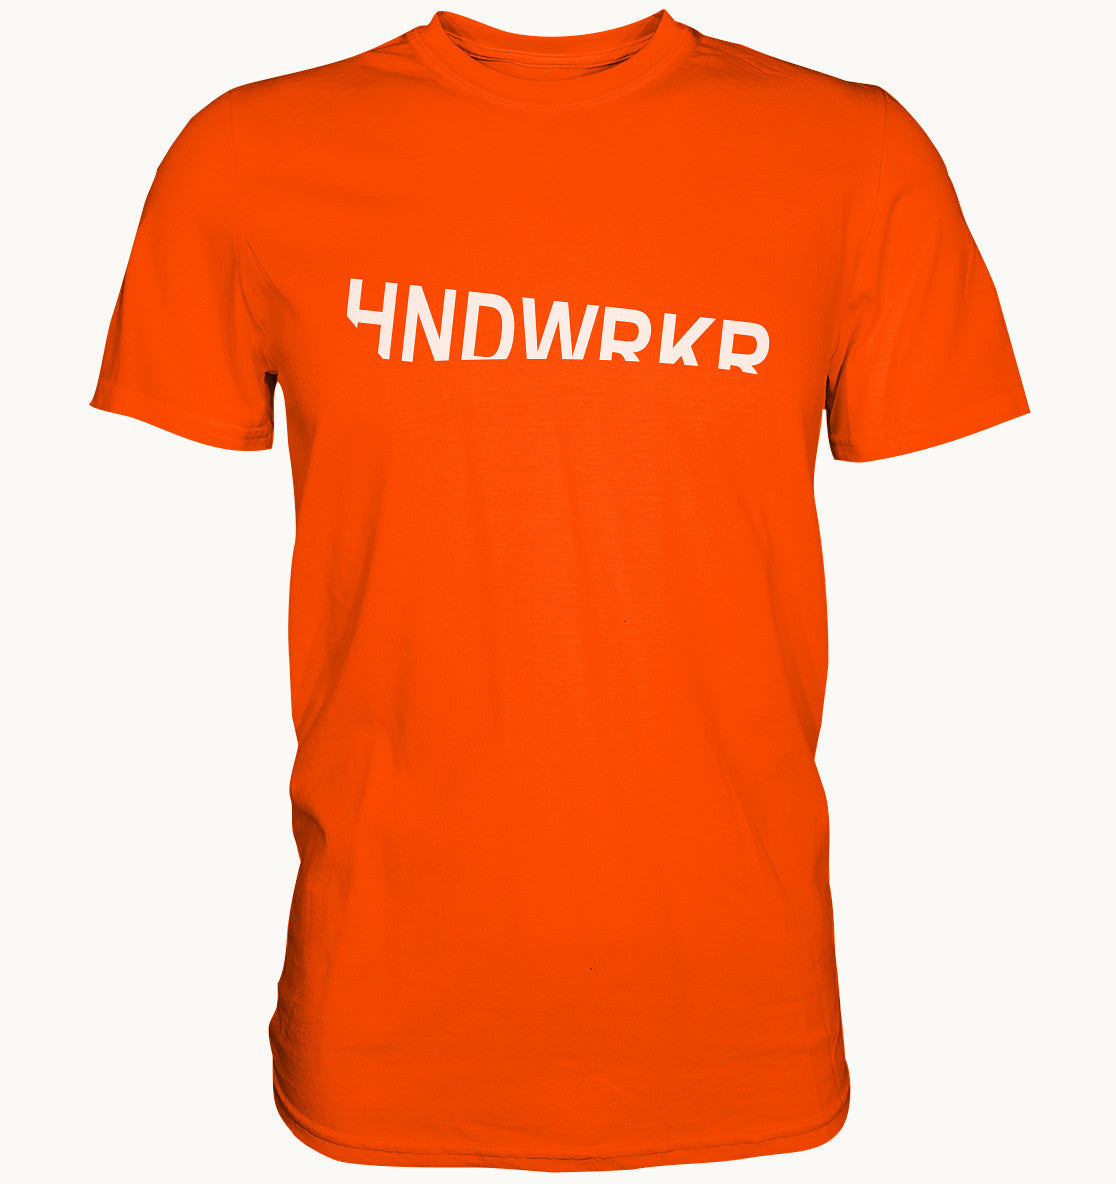 HNDWRKR - Handwerker Designer Shirt - Baufun Shop